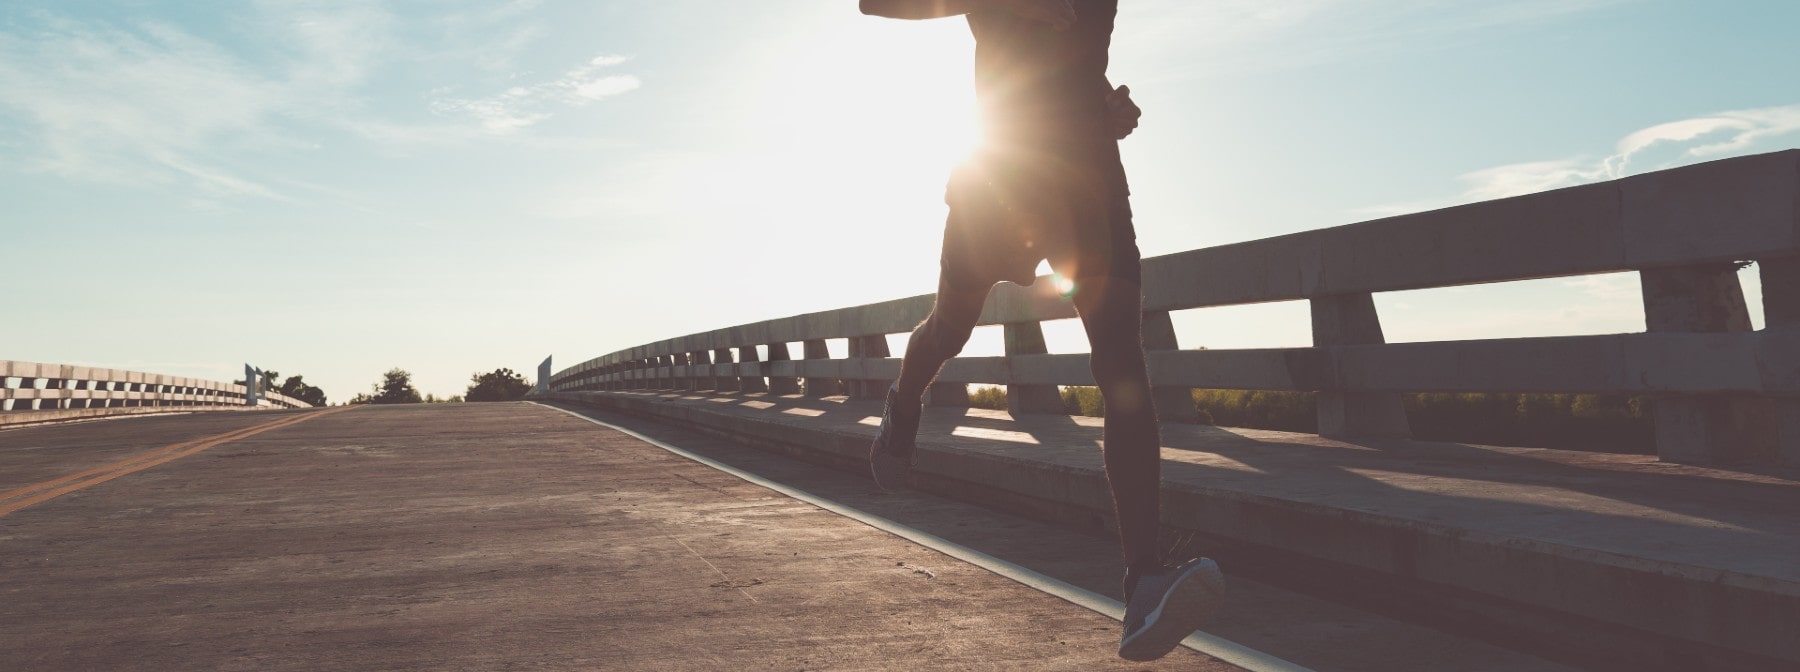 Reggeli edzés és futás | Megéri korán felkelni?